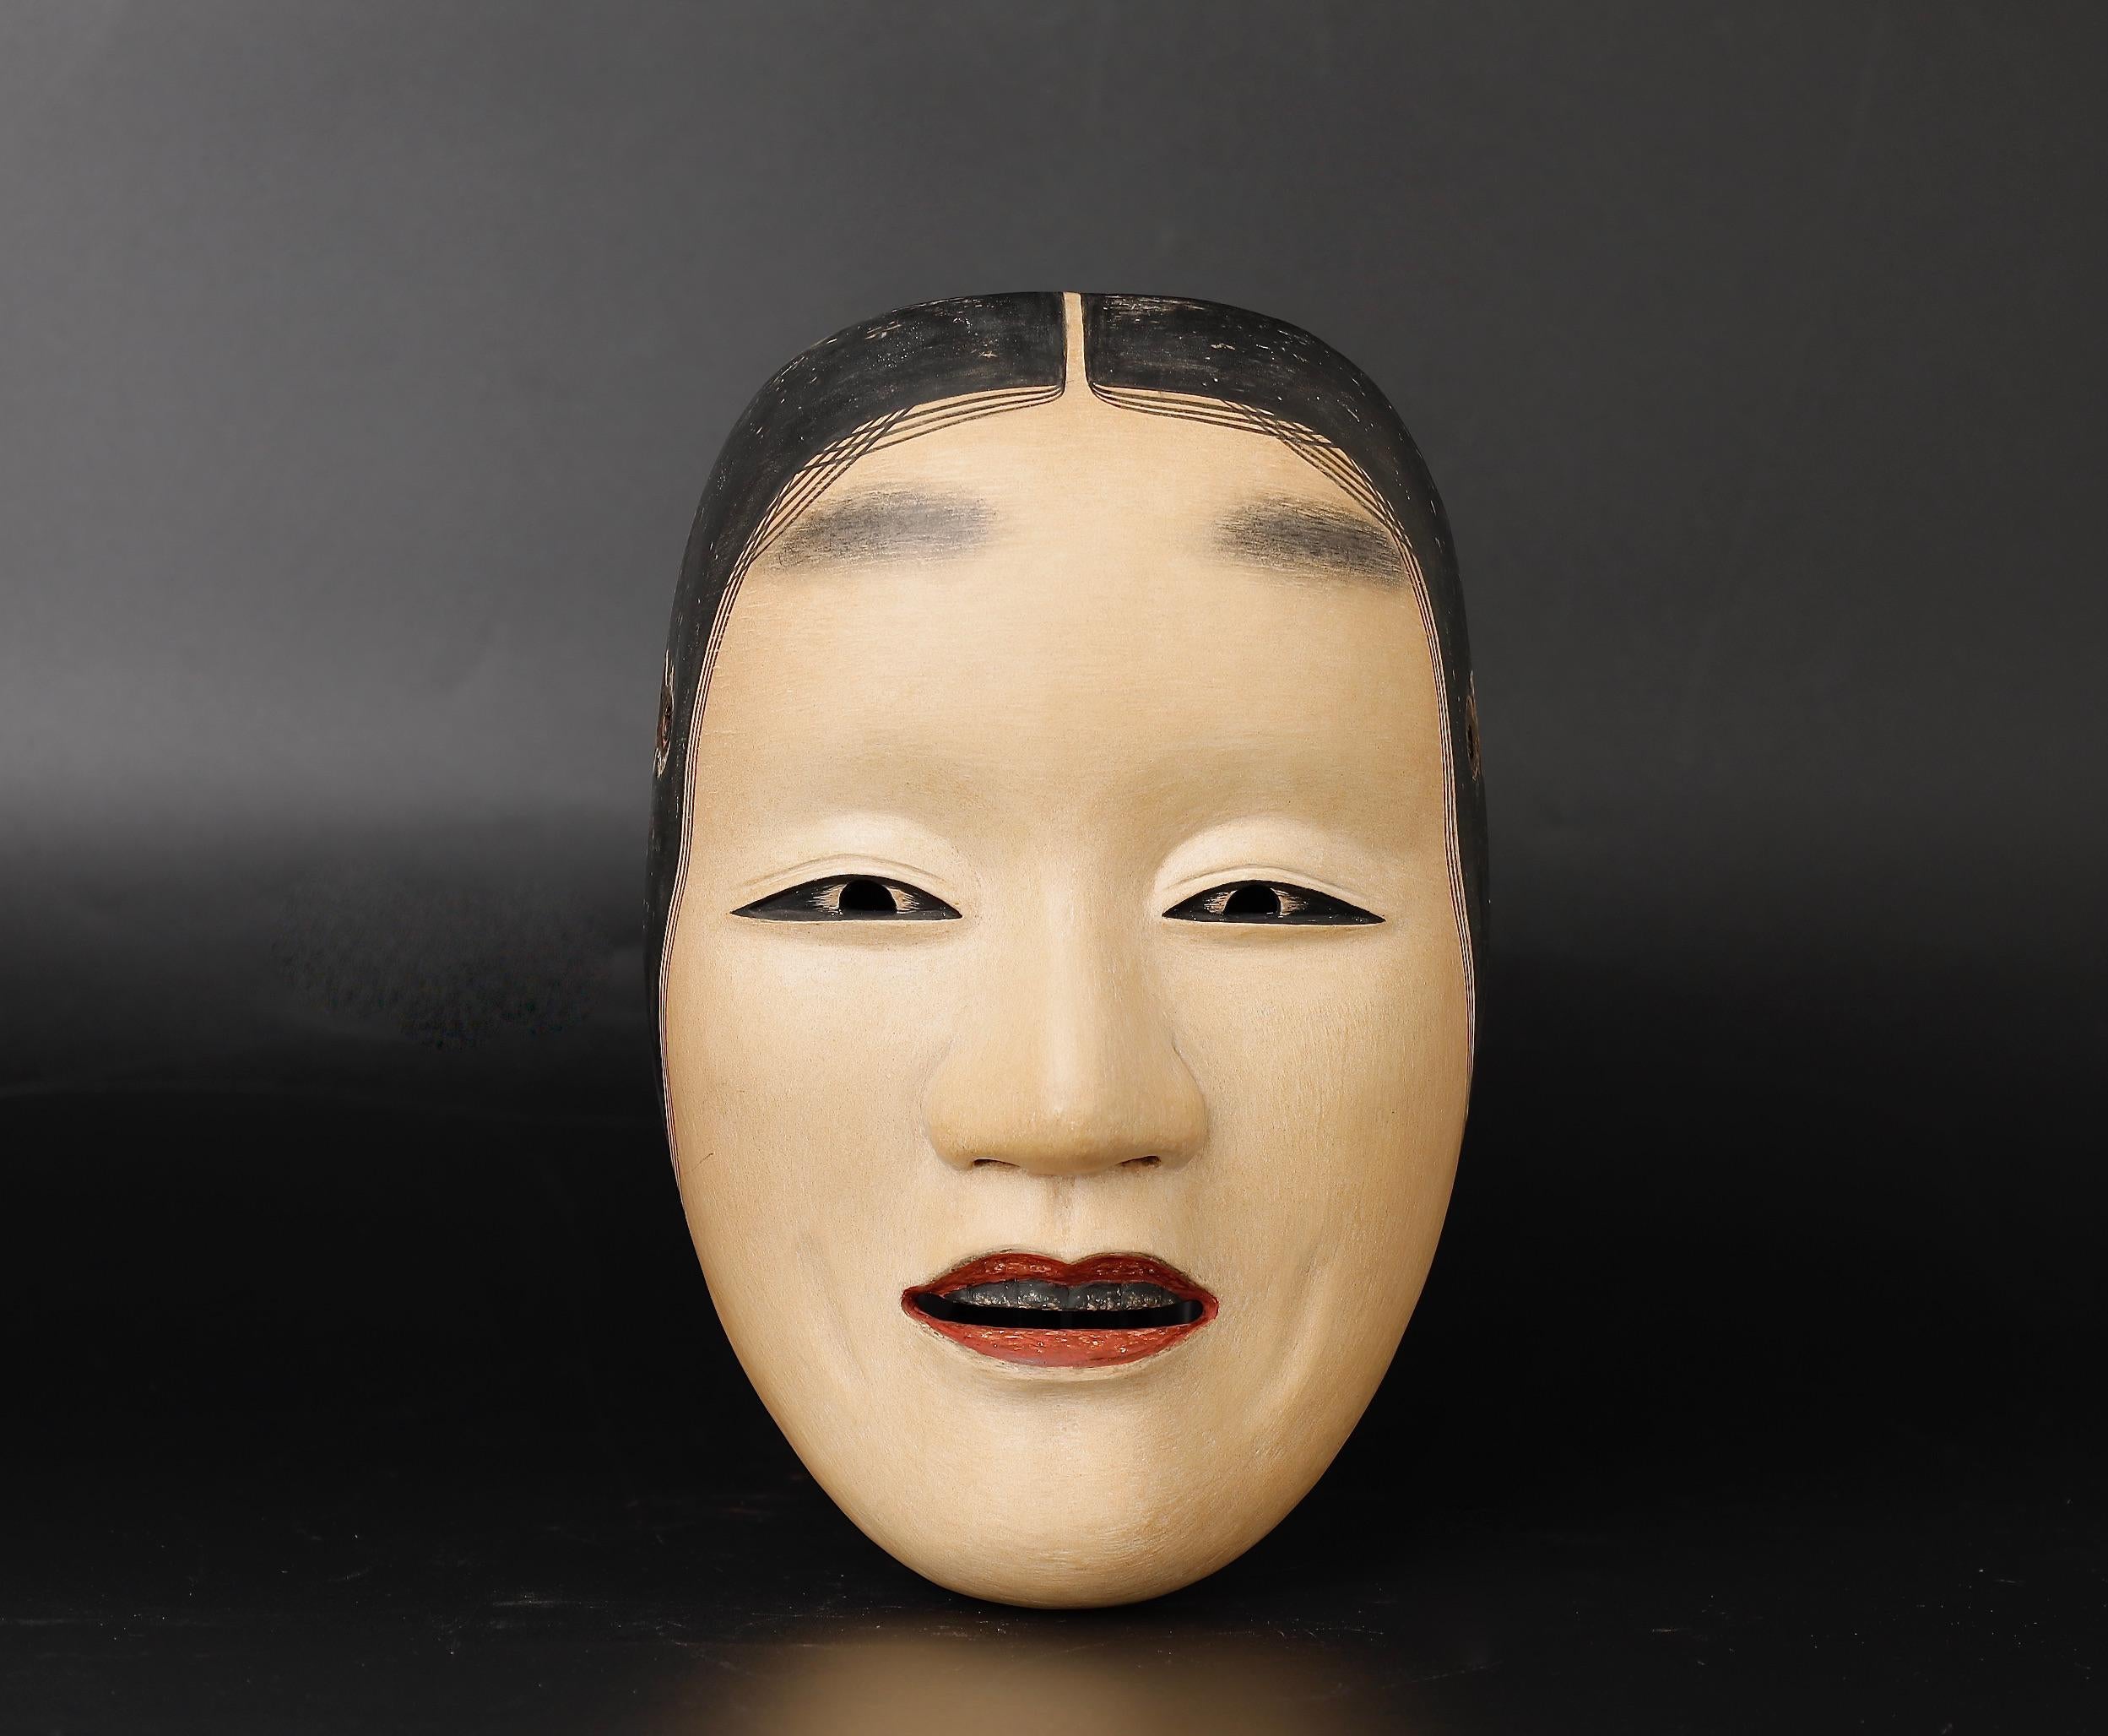 Un rare et exquis masque japonais Fukai Noh qui ne manquera pas de captiver les collectionneurs et ceux qui ont un goût prononcé pour la décoration intérieure. Ce masque particulier est une représentation étonnante d'une femme d'âge moyen déchirée